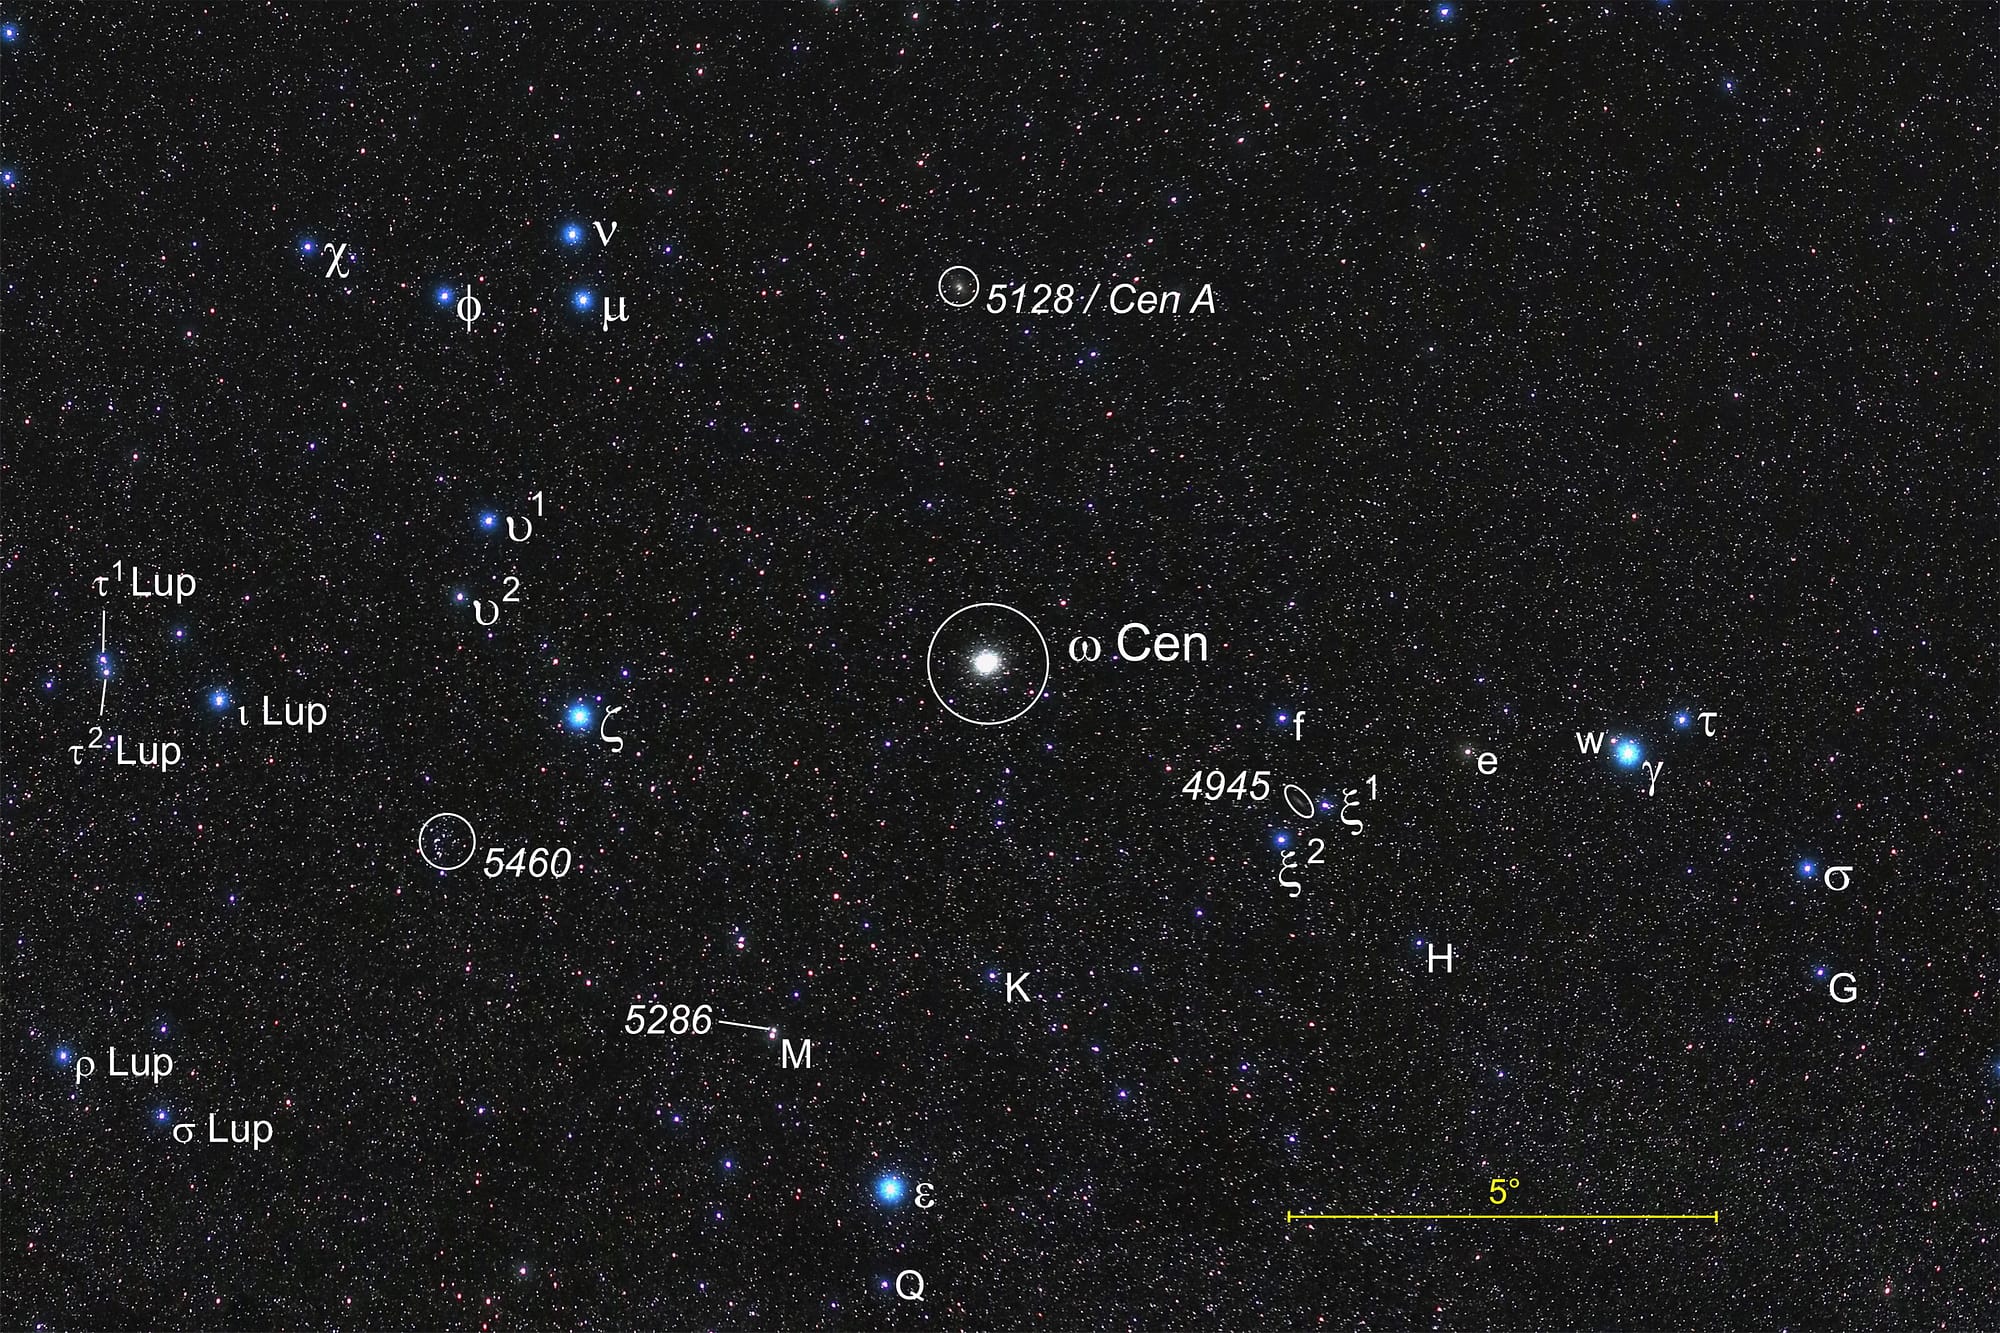 Die Umgebung des Kugelsternhaufens Omega Centauri mit beschrifteten Objekten